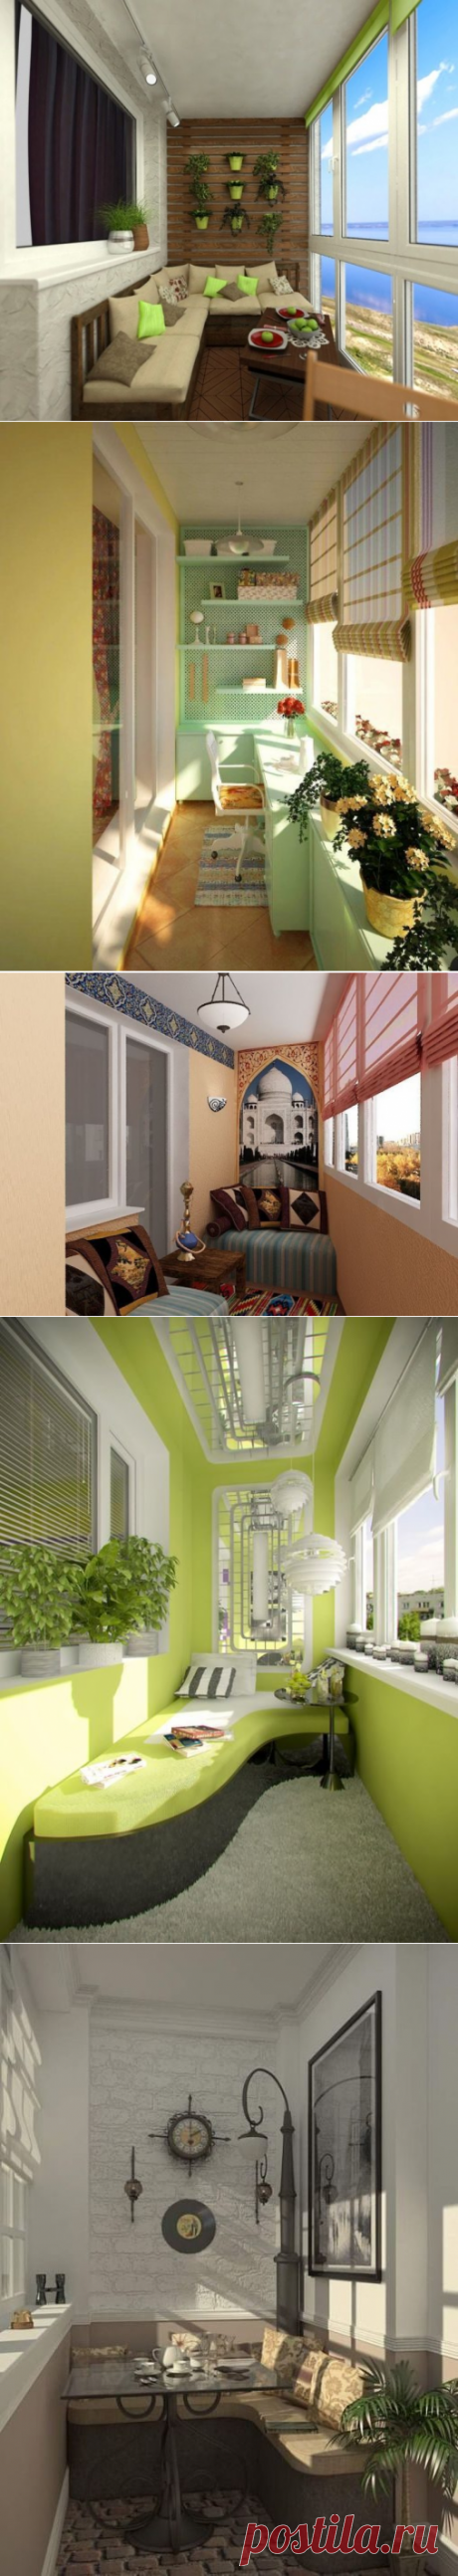 Идеи, как создать уютный домашний интерьер для балкона / Я - суперпупер